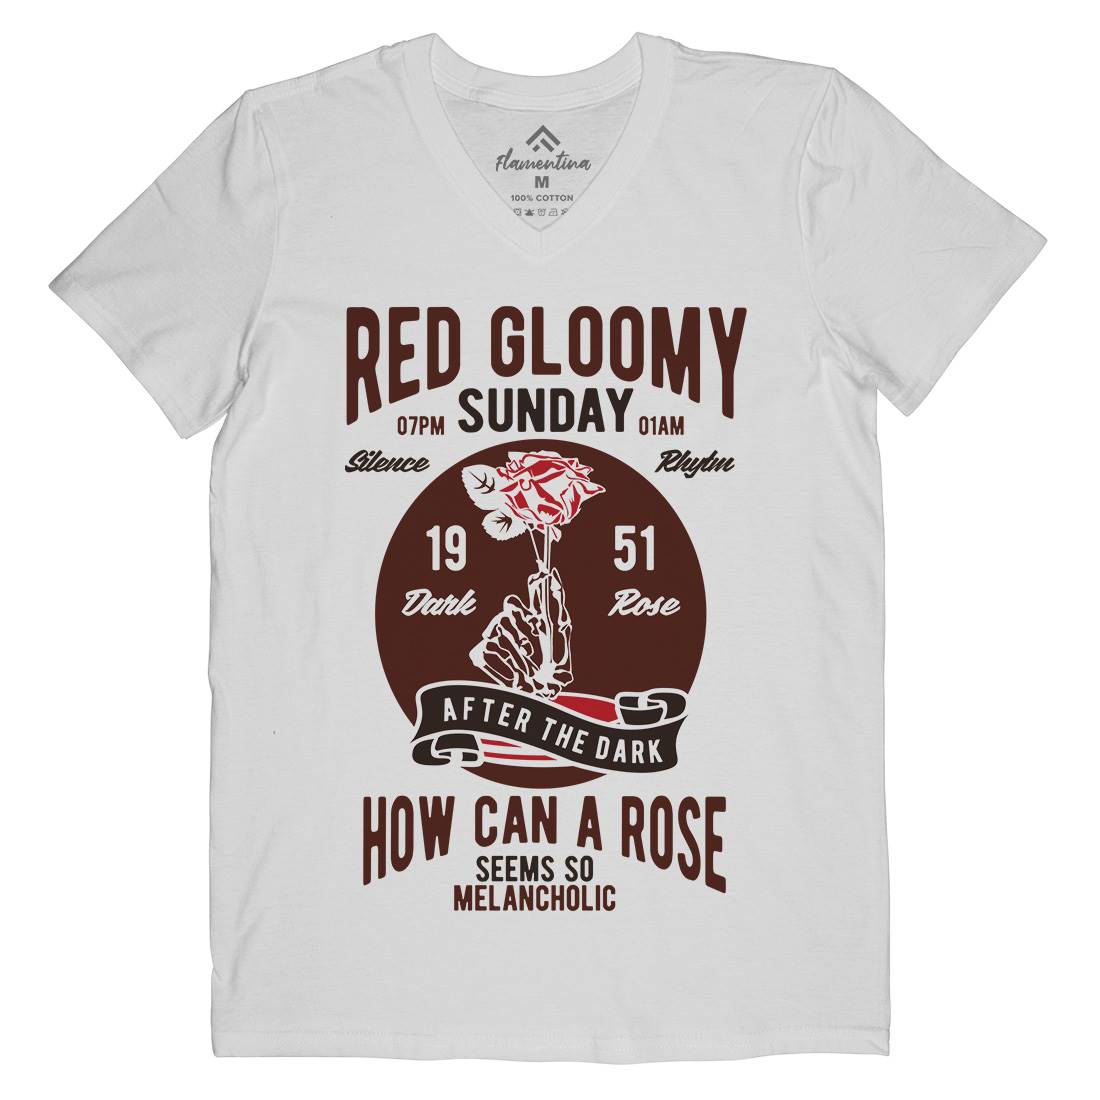 Red Gloomy Sunday Mens Organic V-Neck T-Shirt Retro B437